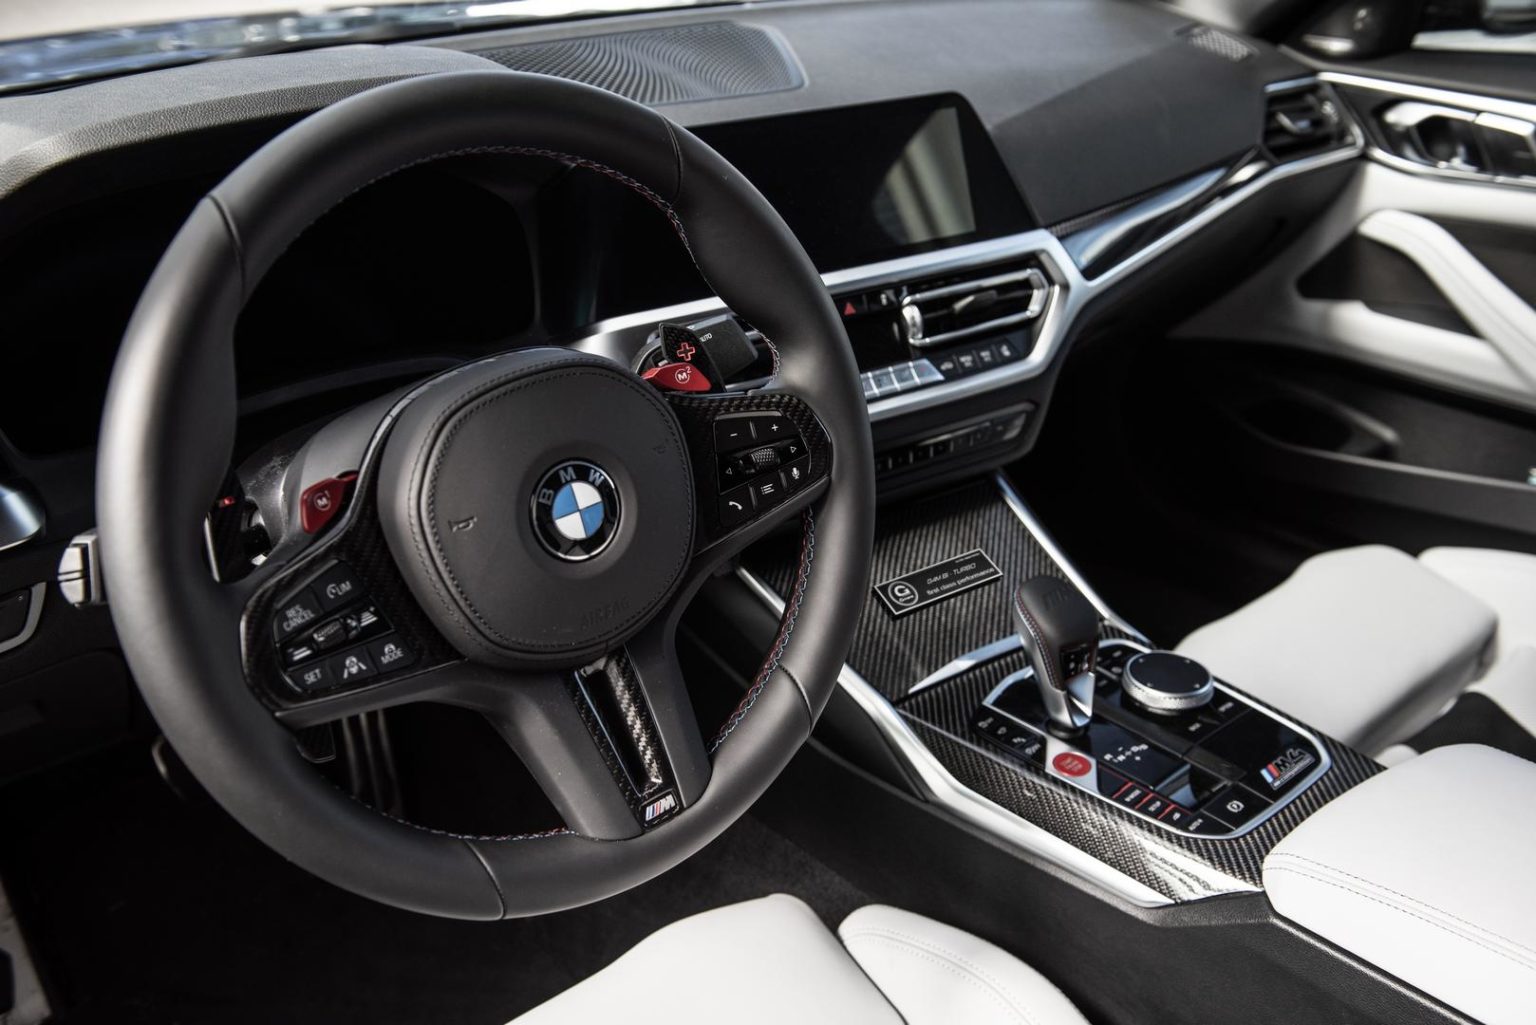 G-Power BMW M3/4 способен развивать максимальную выходную мощность 600 л.с. с помощью программного обеспечения GP-600. С другой стороны, программное обеспечение GP-650 в сочетании с новой выхлопной системой Deep Tone увеличивает выходную мощность до 